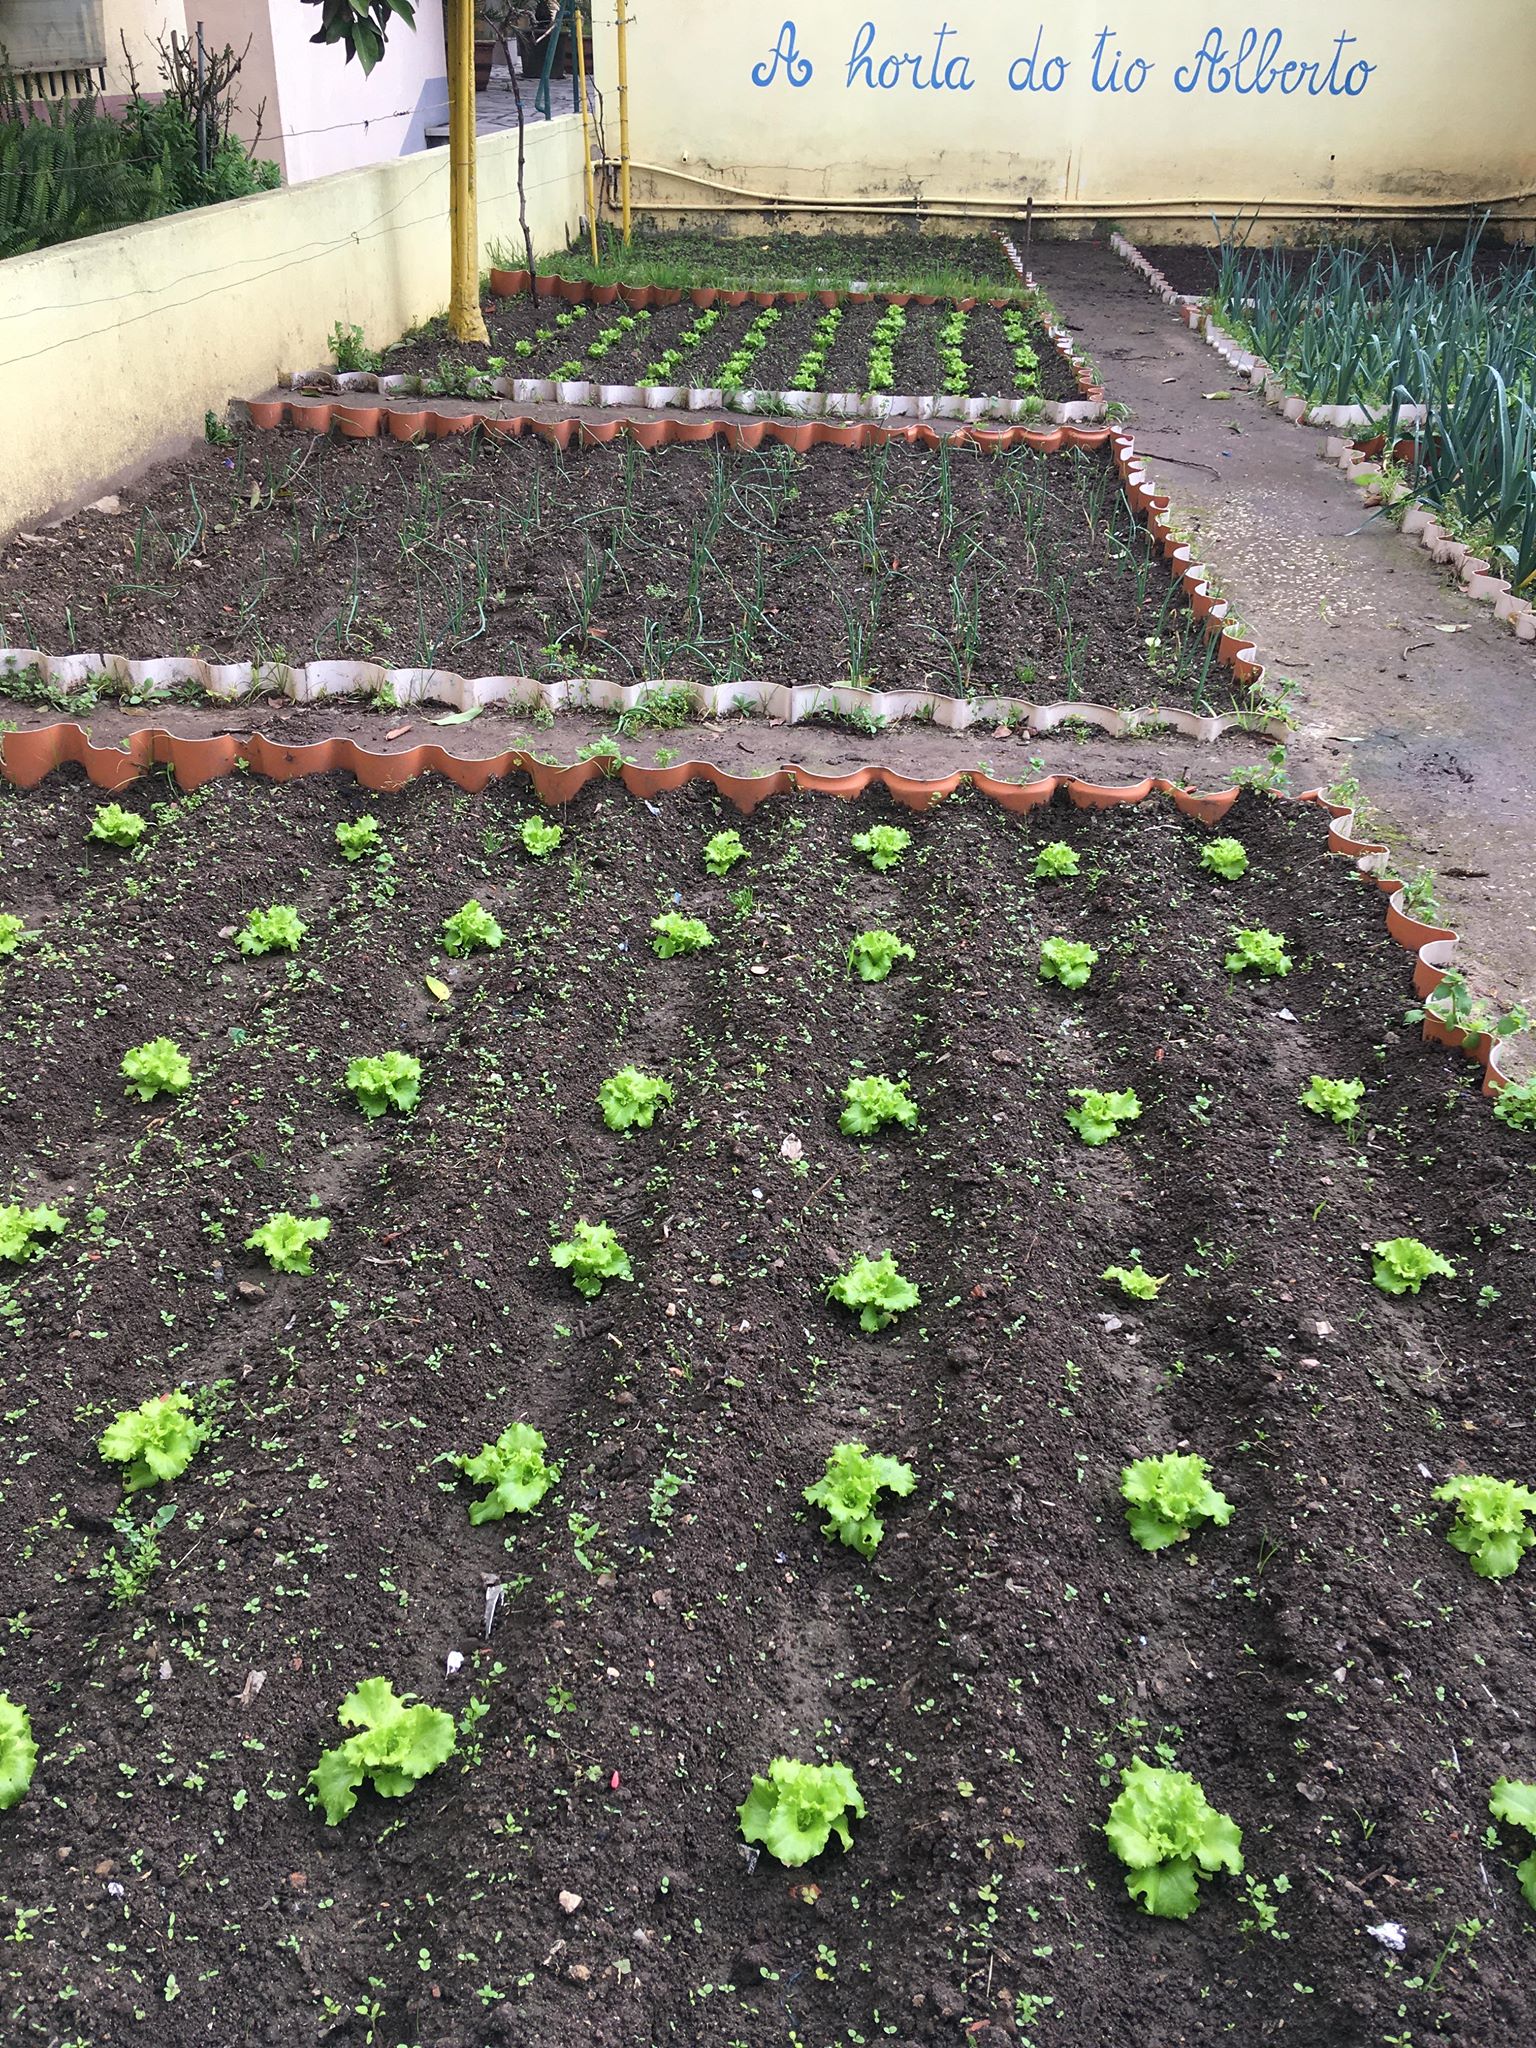 Na nossa horta, semeamos alfaces. Quando estiverem prontas para colher, serão consumidas no nosso refeitório.